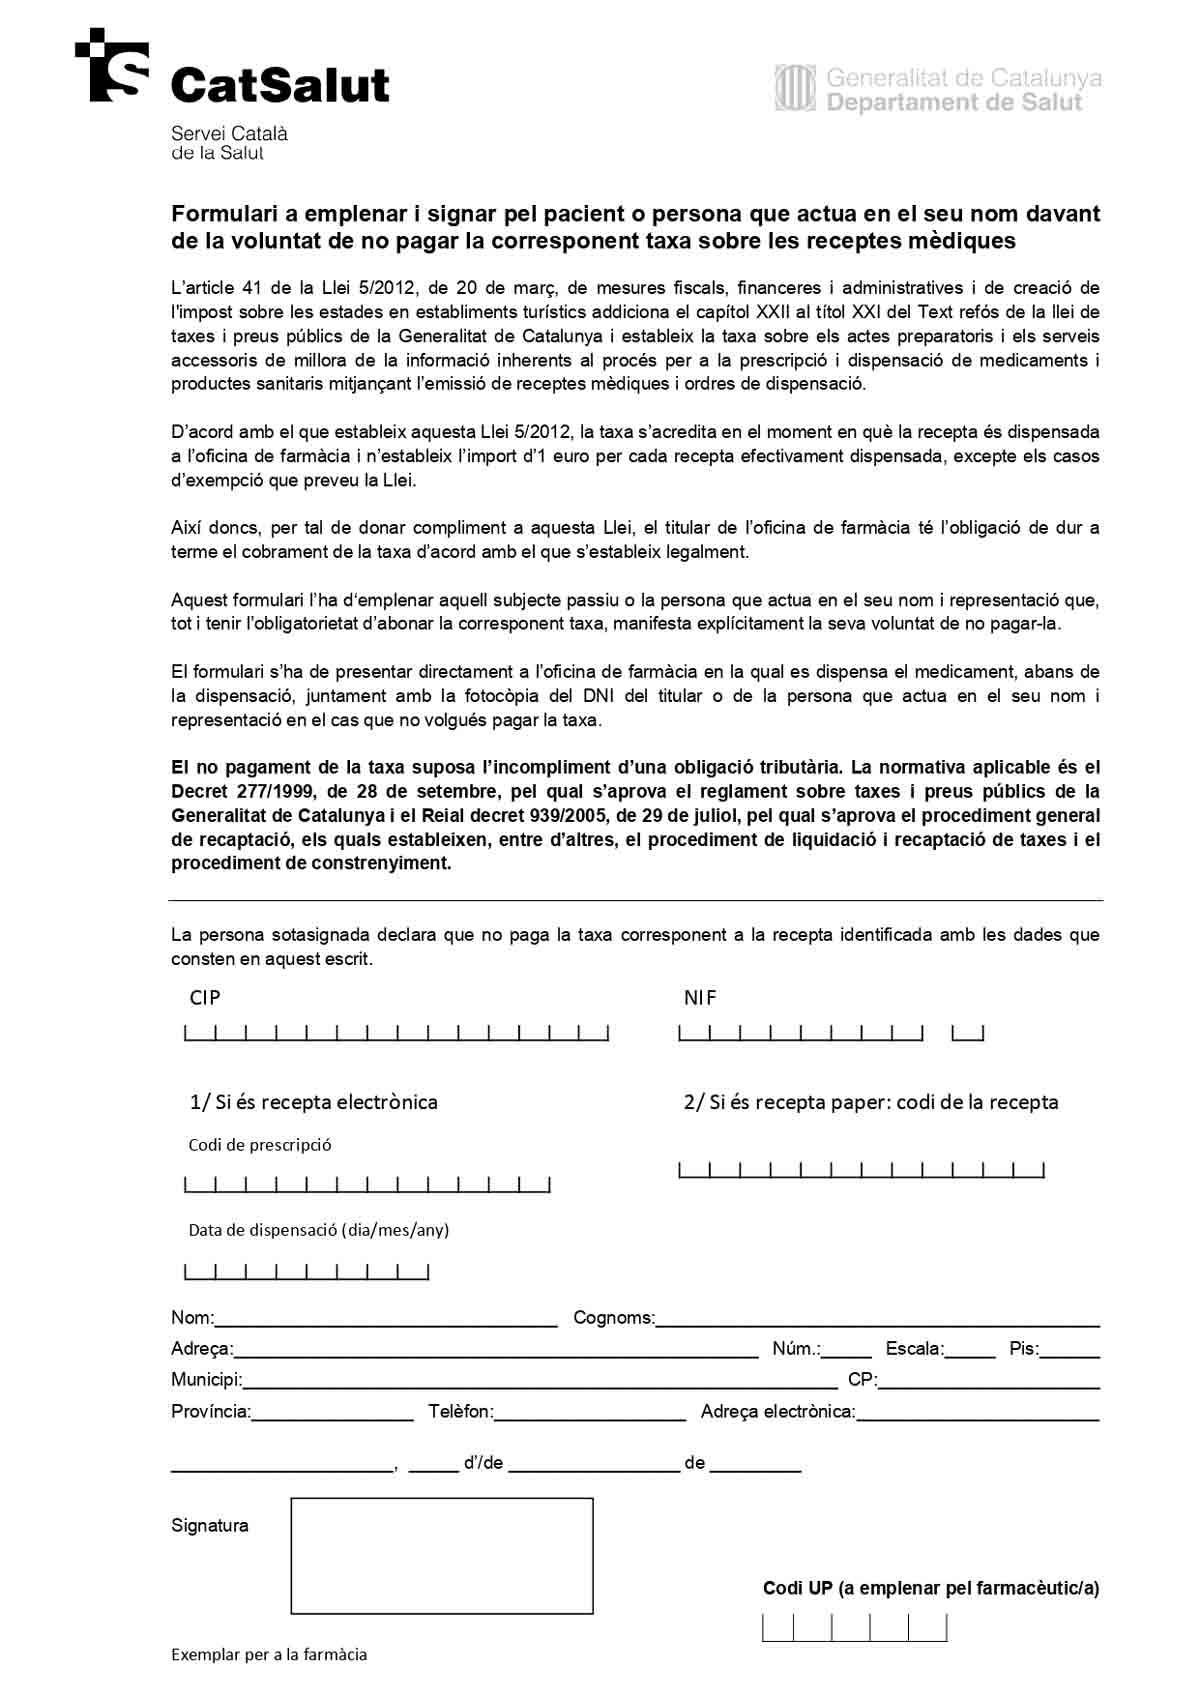 Formulario para Cataluña página 1 